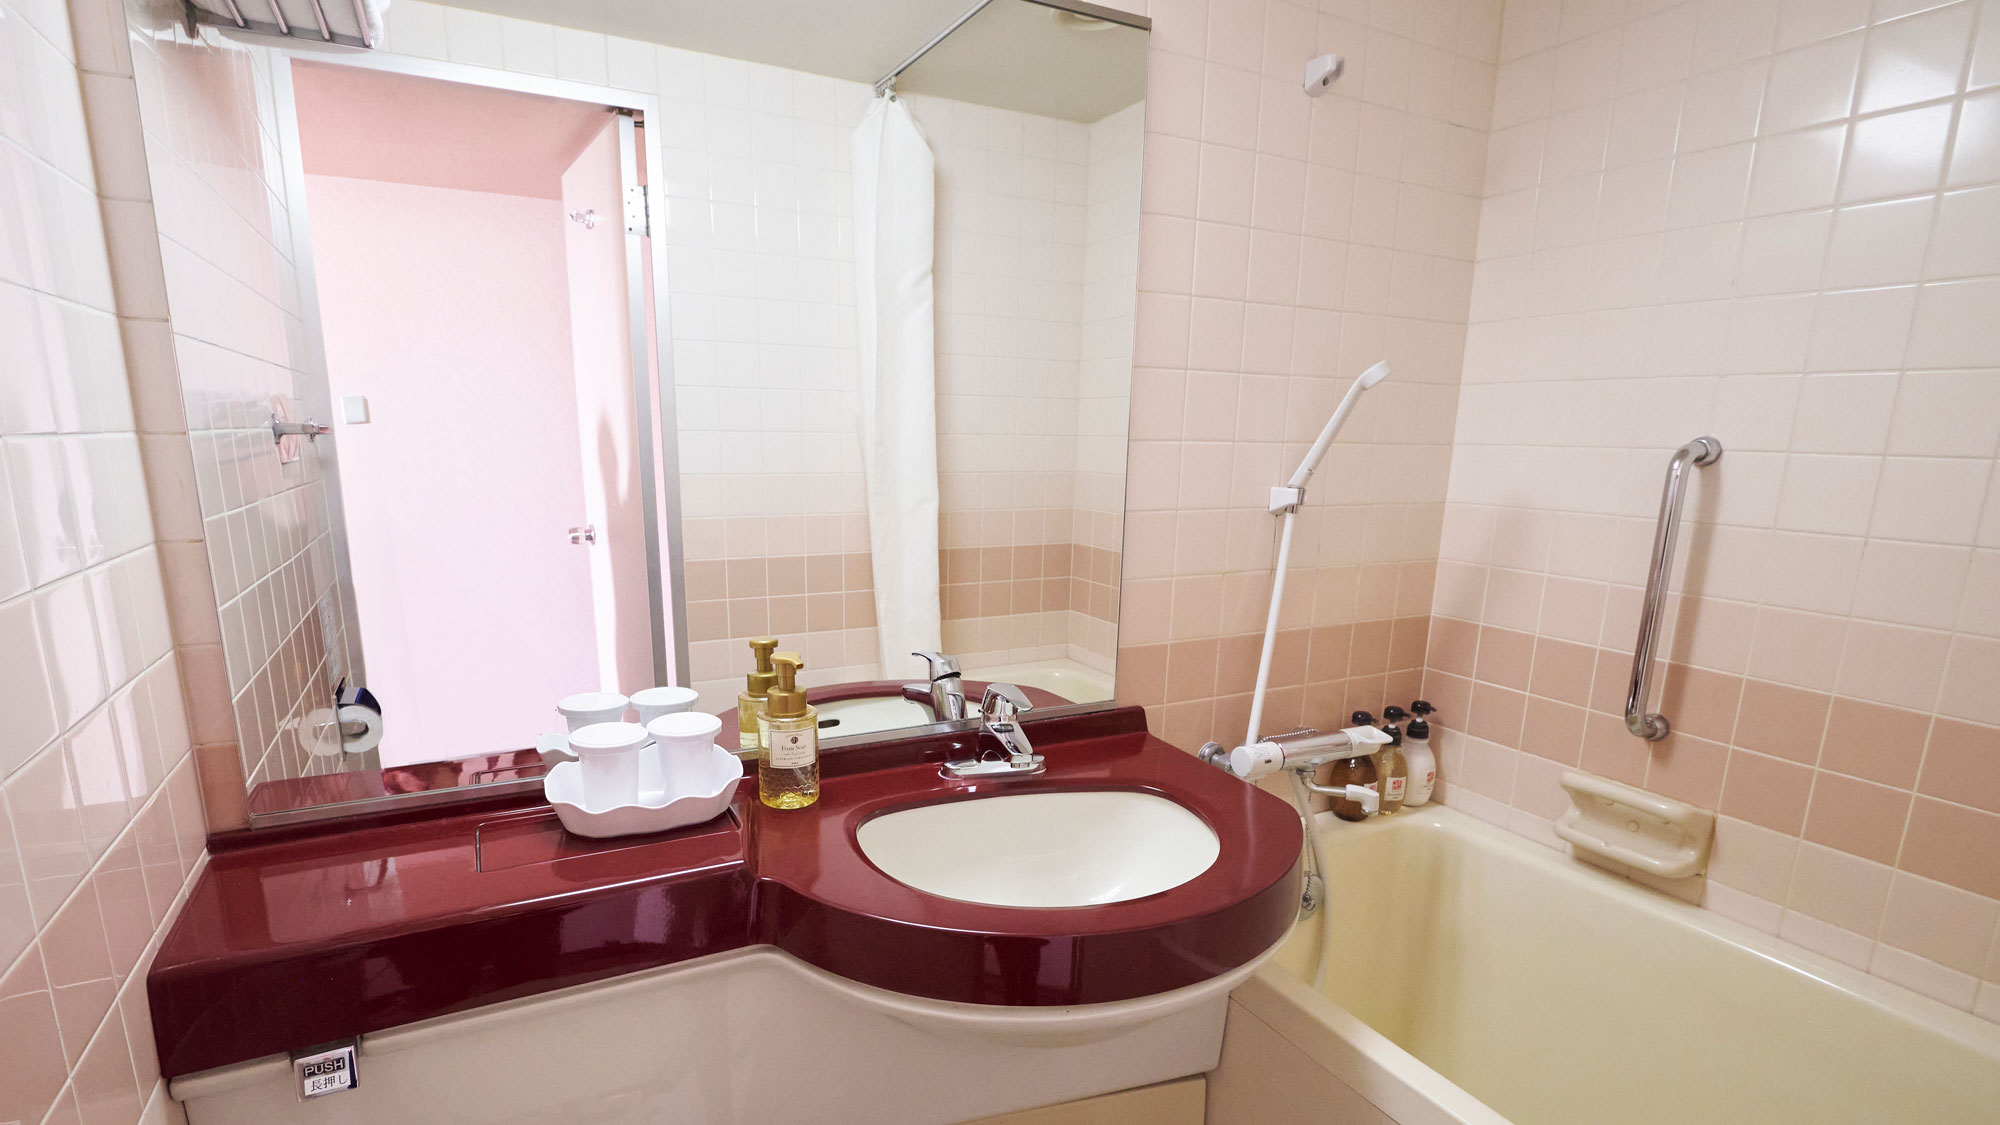 【セミダブルバスルーム一例】バス・洗面台・トイレがひとつになったコンパクトな空間